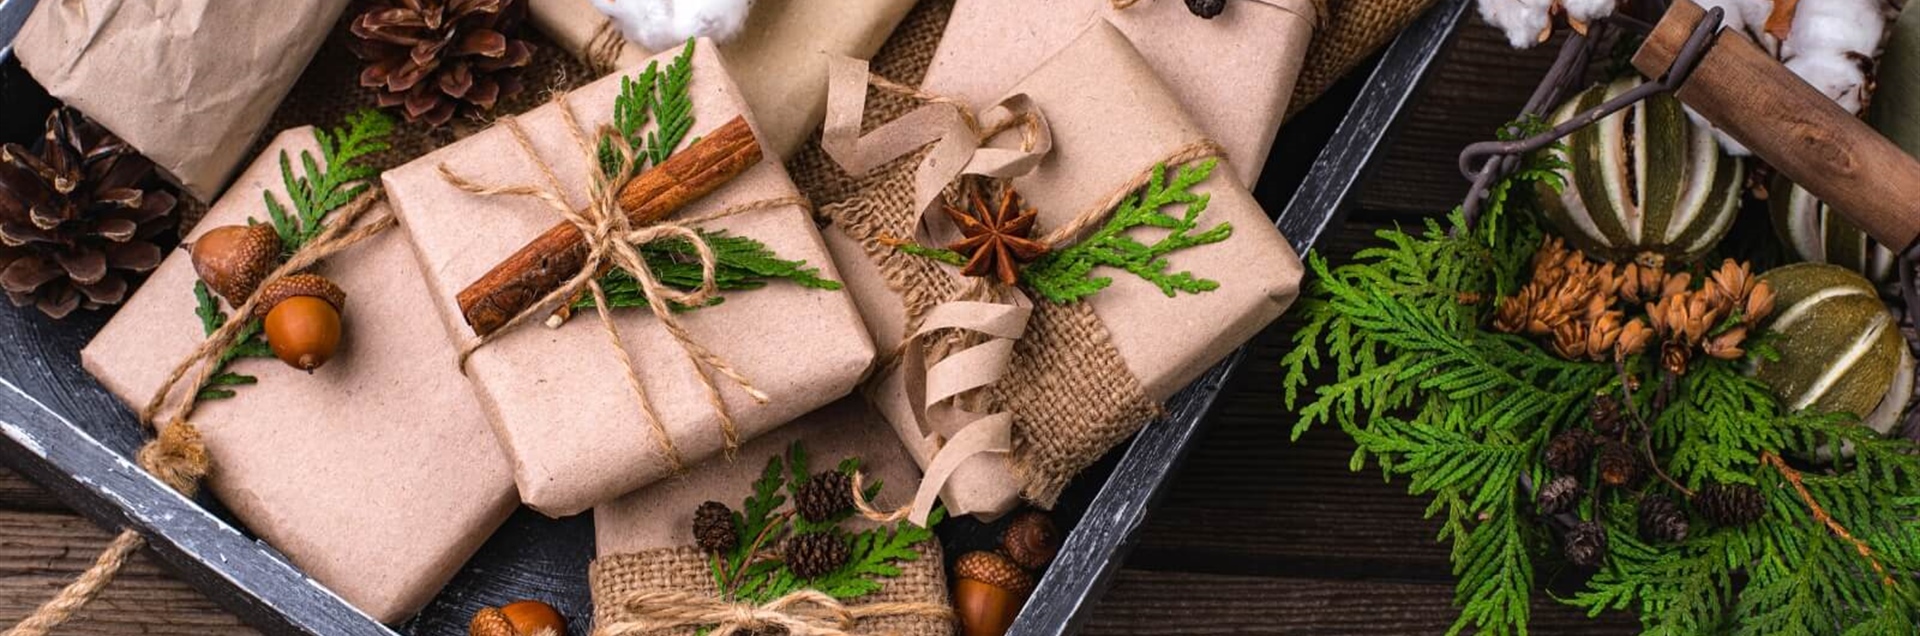 Cómo envolver los regalos de Navidad de forma sostenible